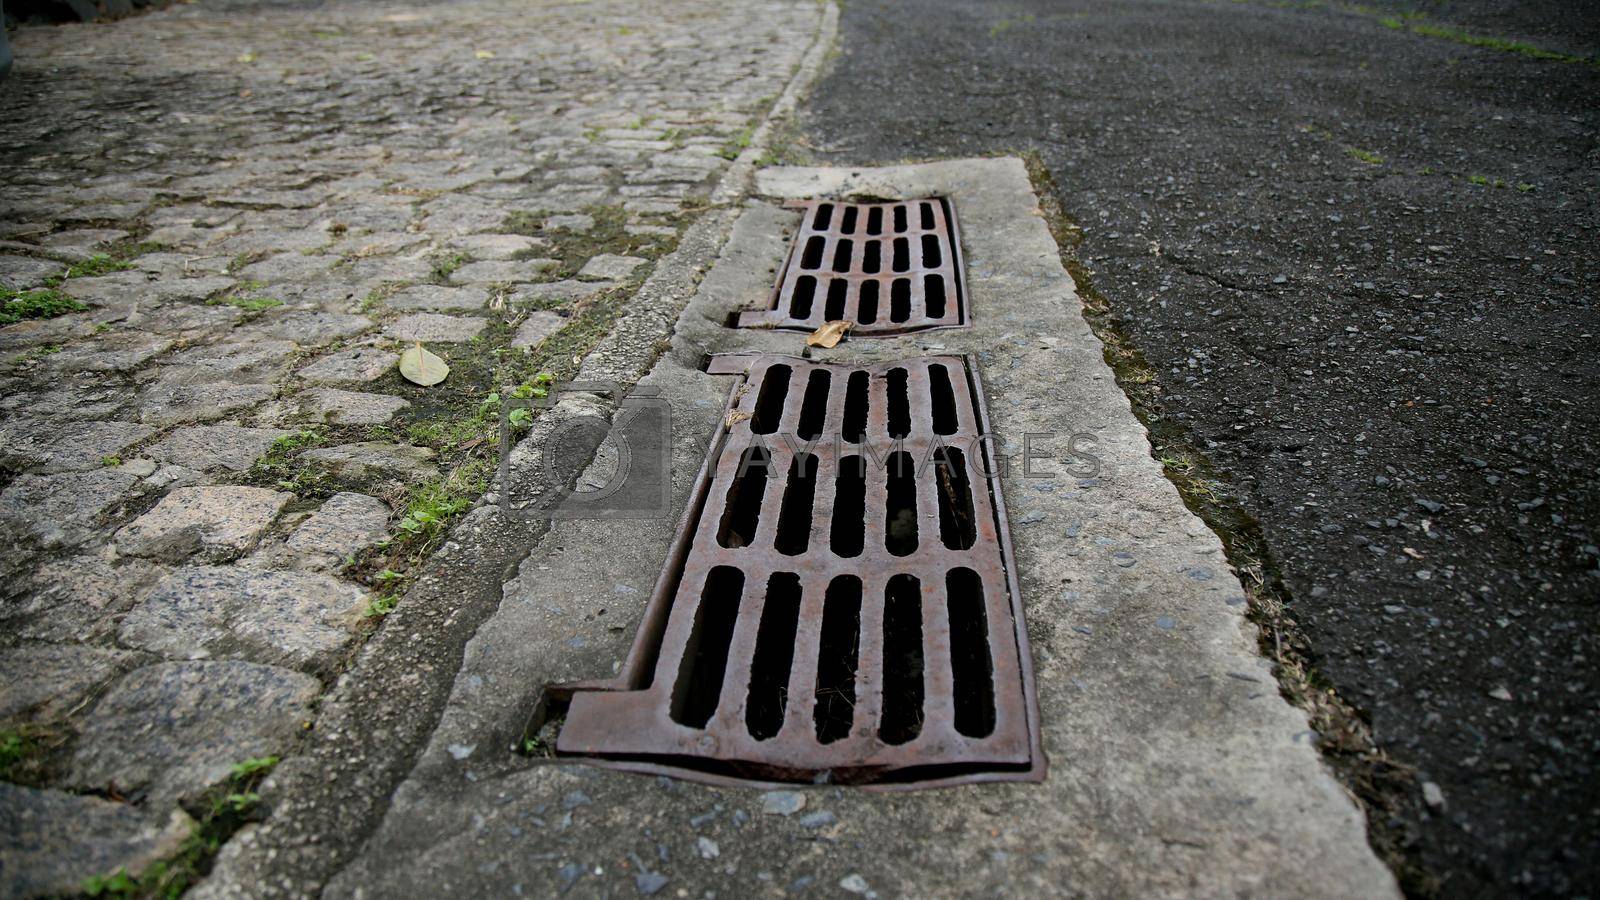 Royalty free image of manhole grating for rainwater drainage by joasouza